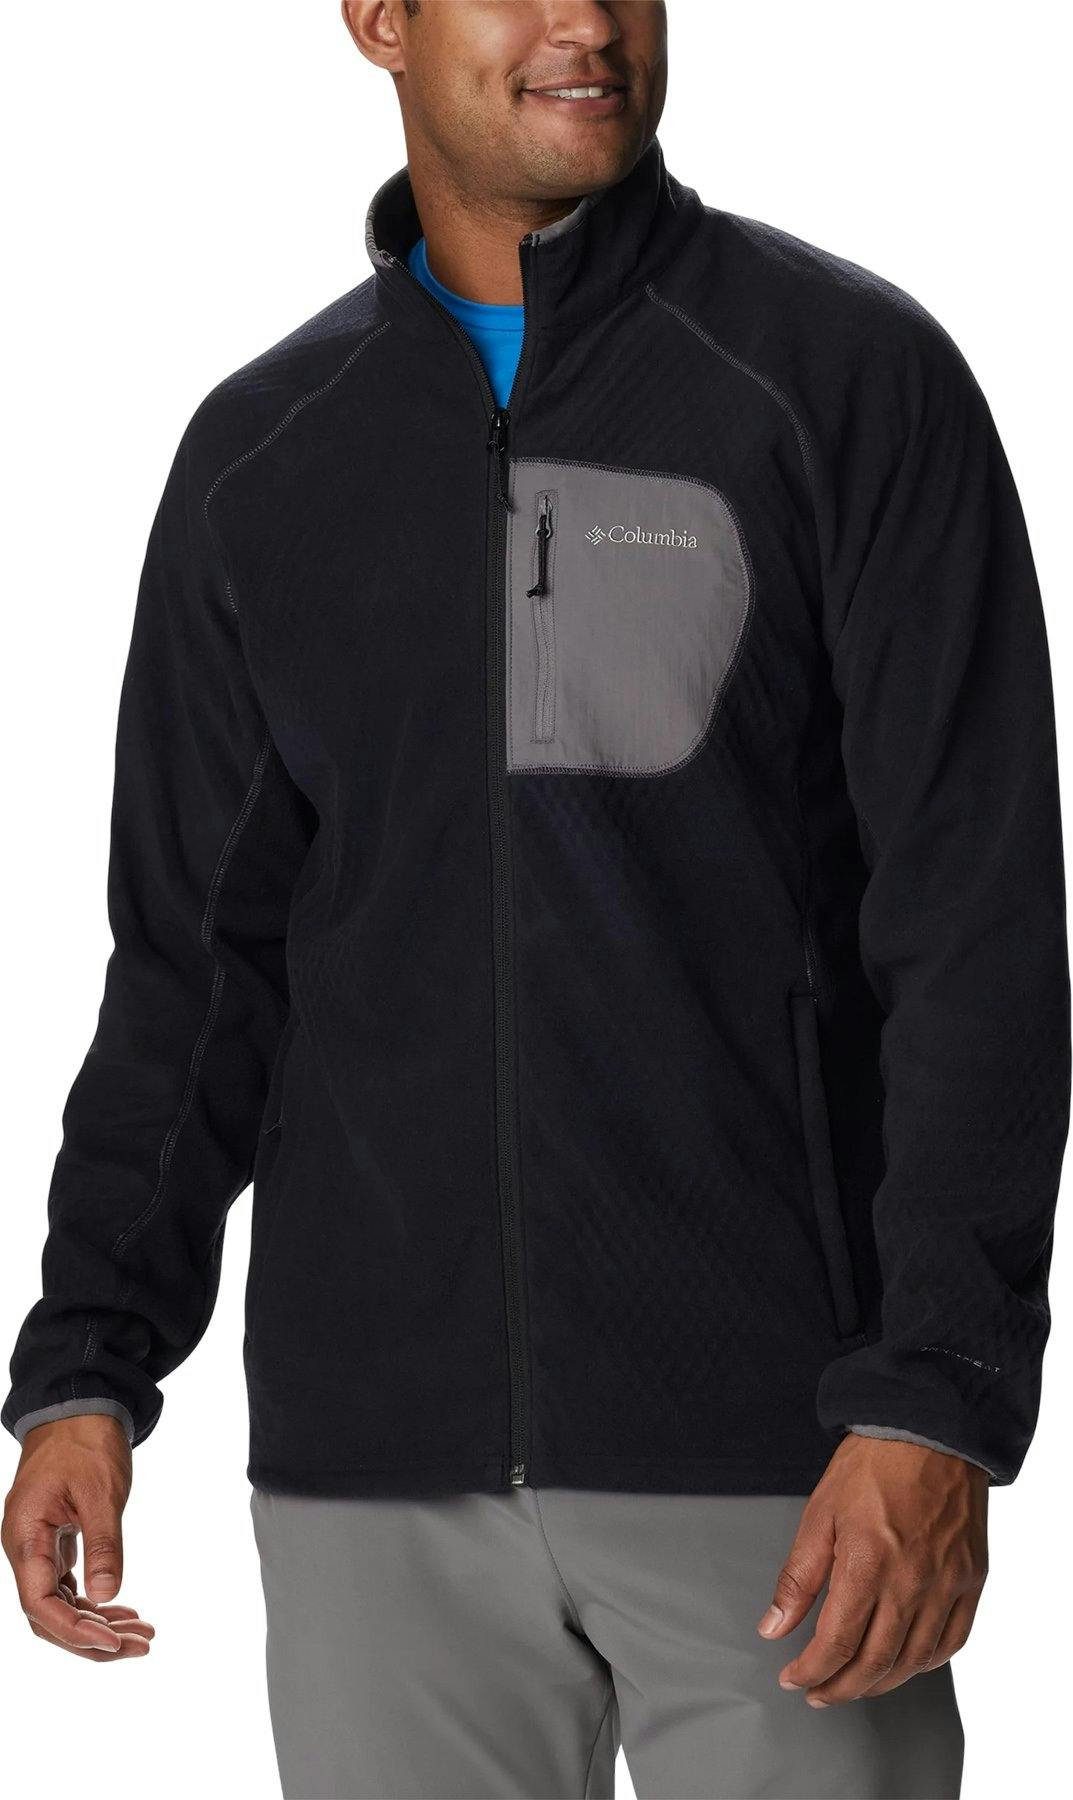 Product image for Outdoor Tracks Full Zip Fleece Jacket - Men's